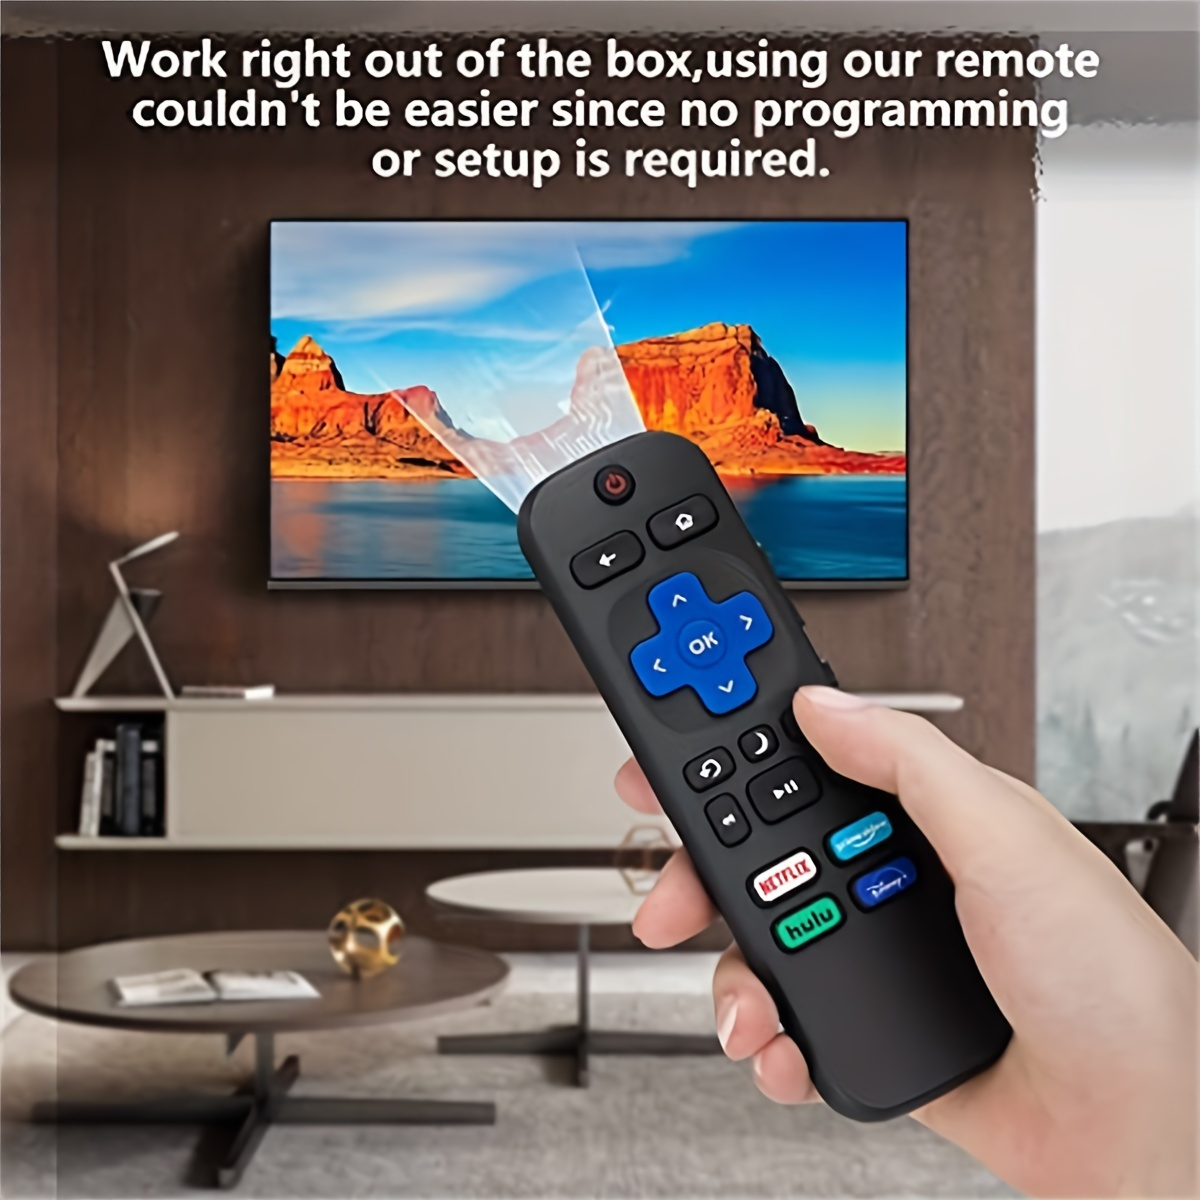 Control remoto Universal por voz, comando de voz de repuesto Compatible con  Samsung Smart TV LED QLED 4K 8K Crystal UHD HDR Curvo